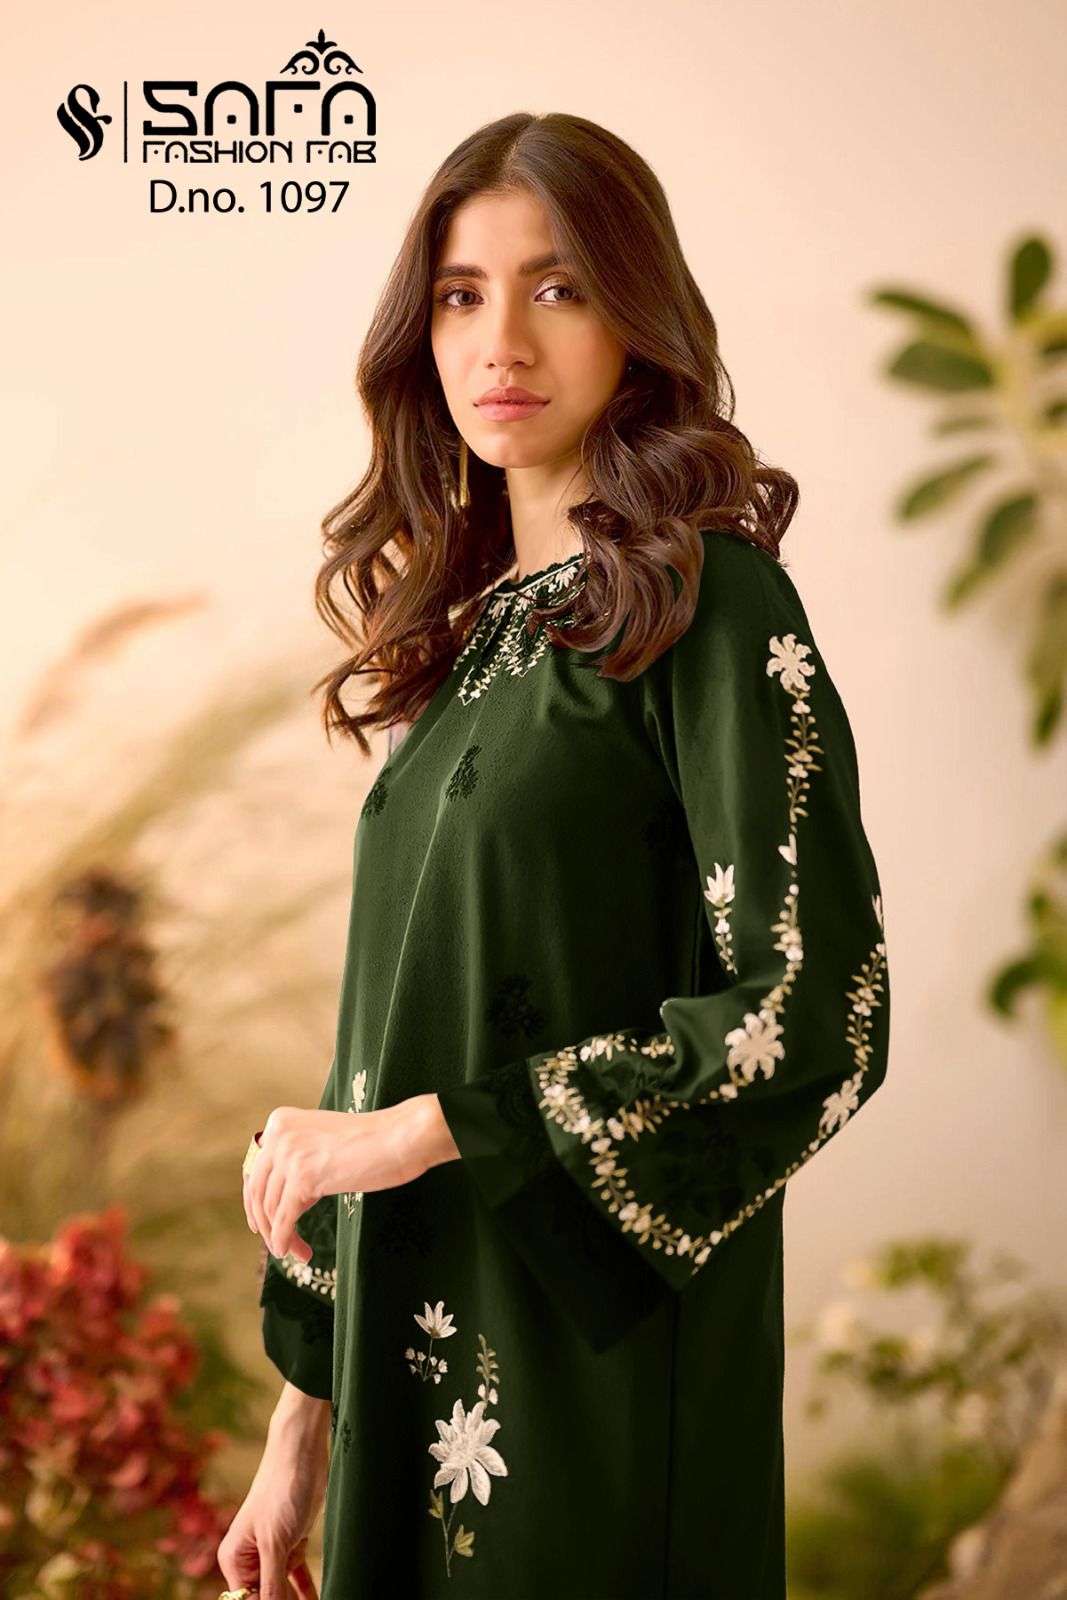 safa fashion fab 1097 series readymade designer pakistani salwar kameez manufacturer surat 